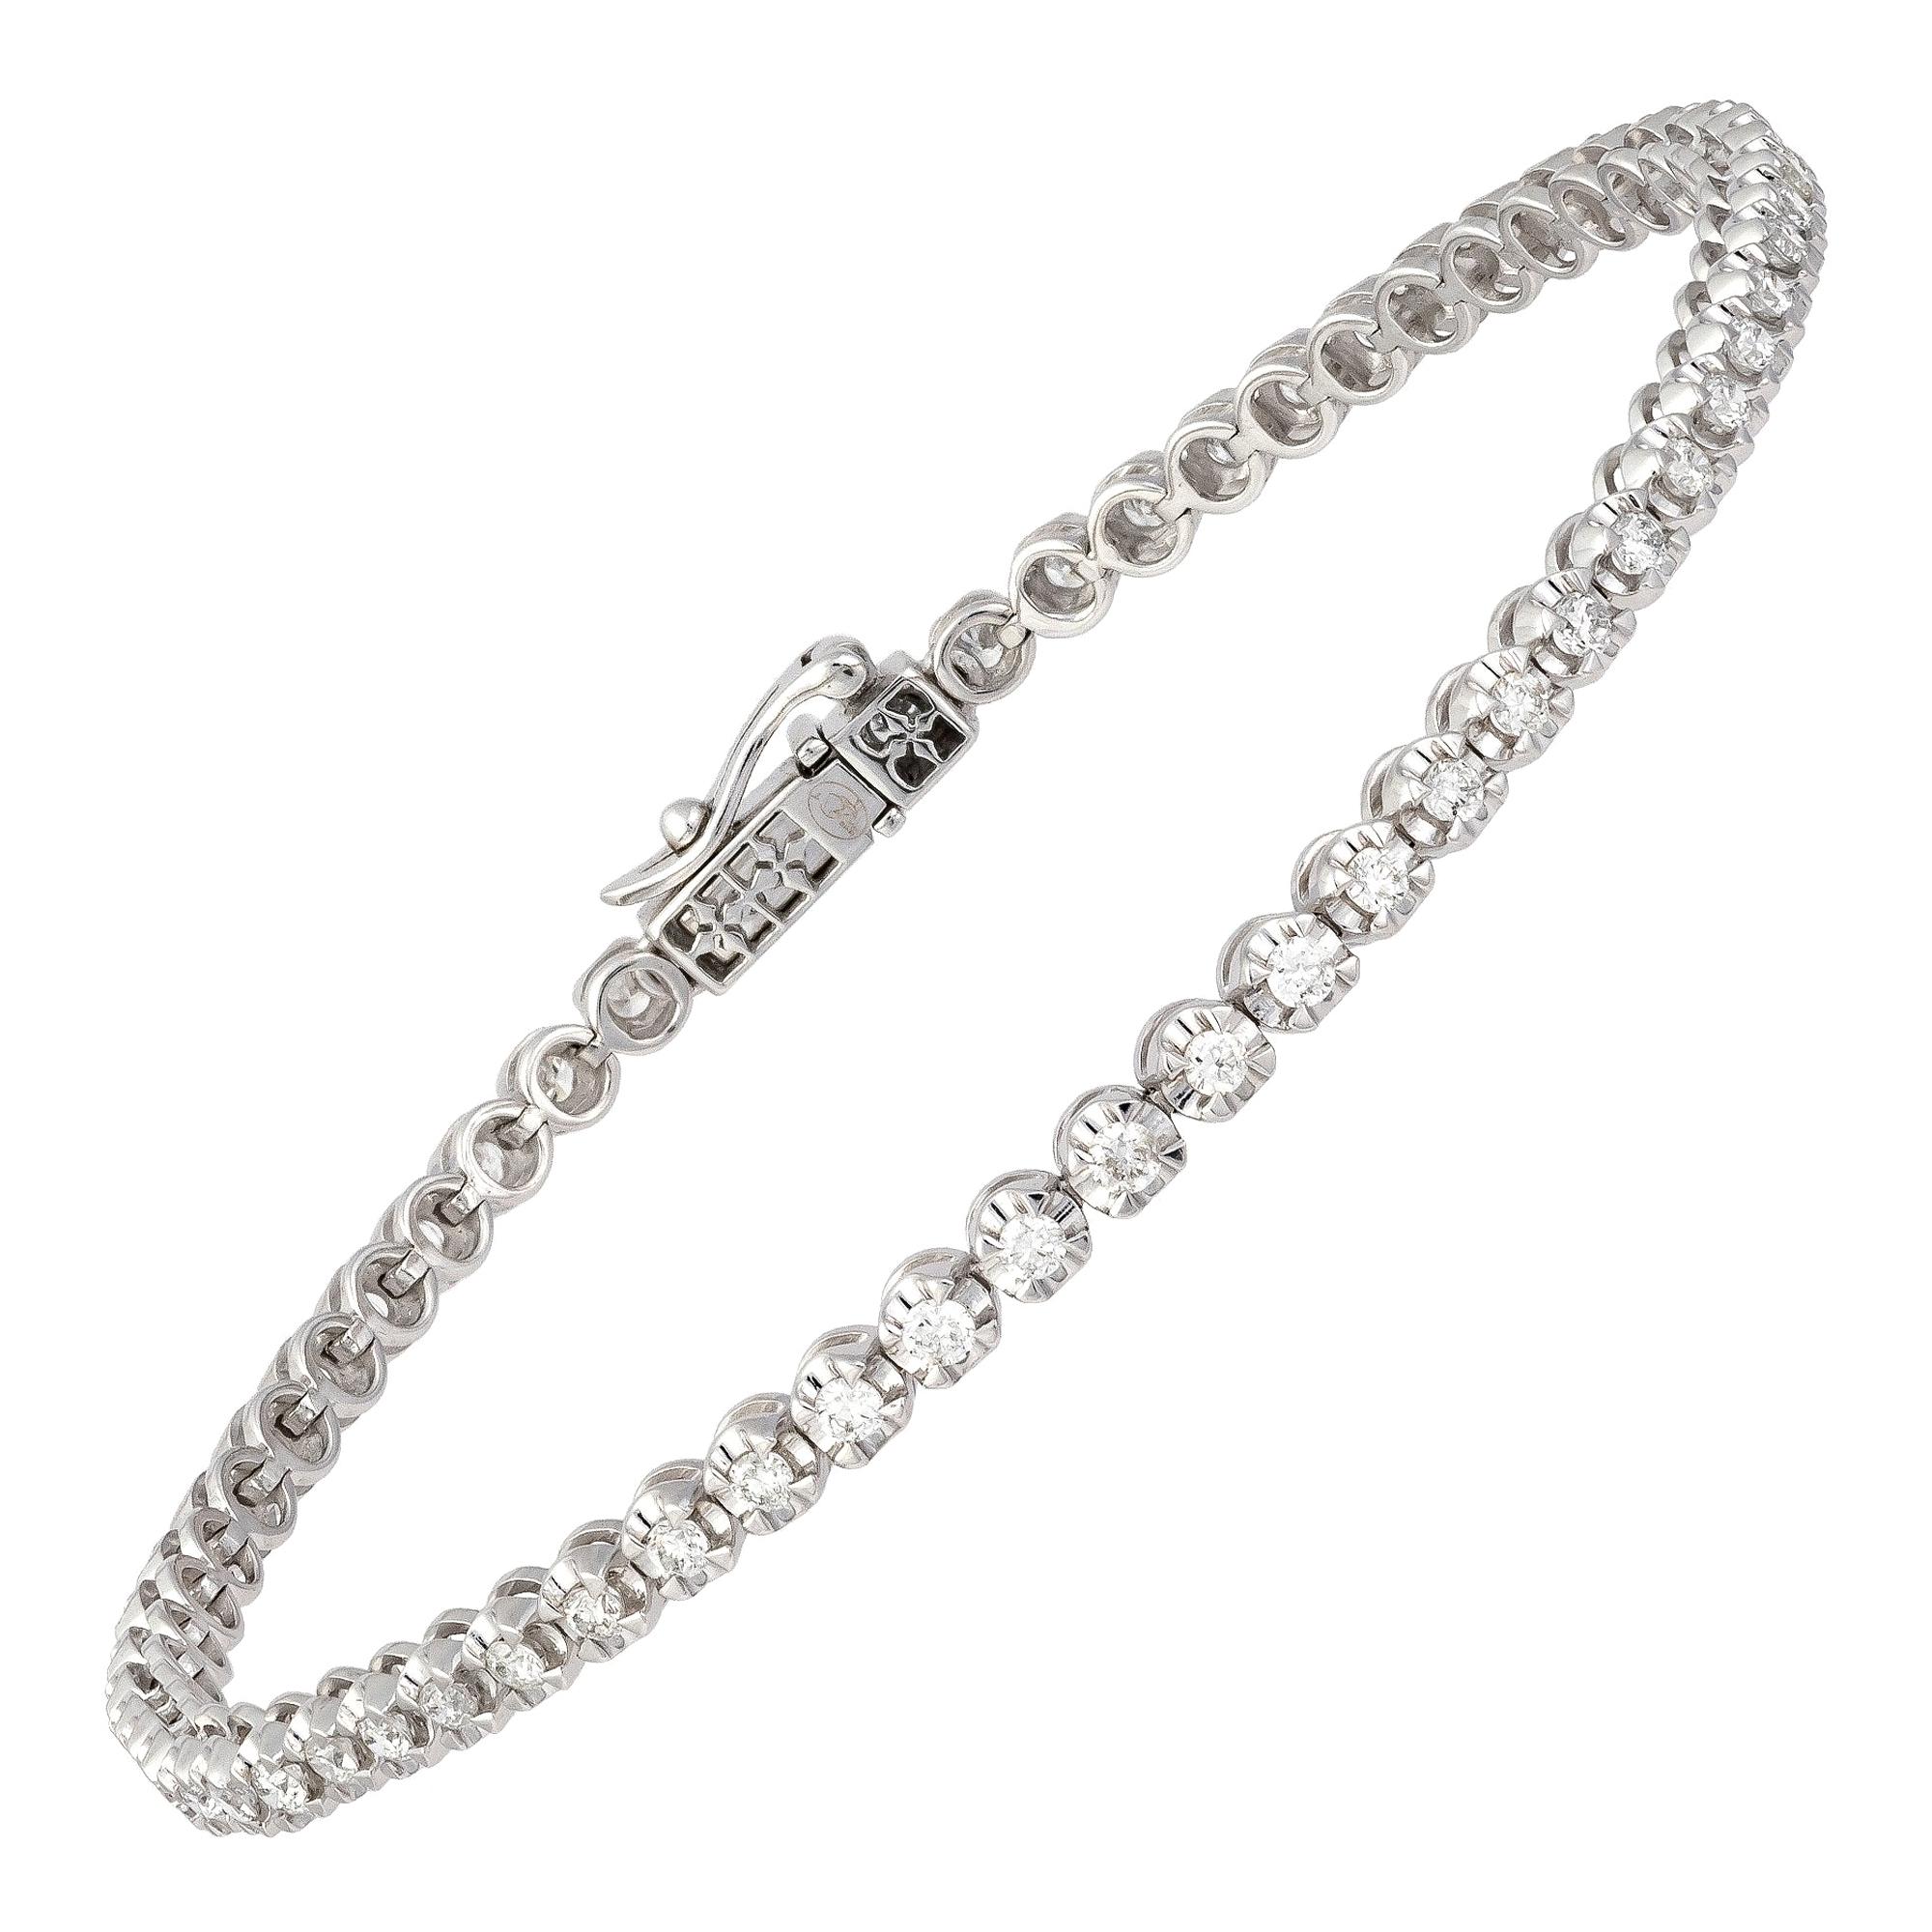 Straight Line Setting Tennis Bracelet 18K White Gold Diamond for Her For Sale